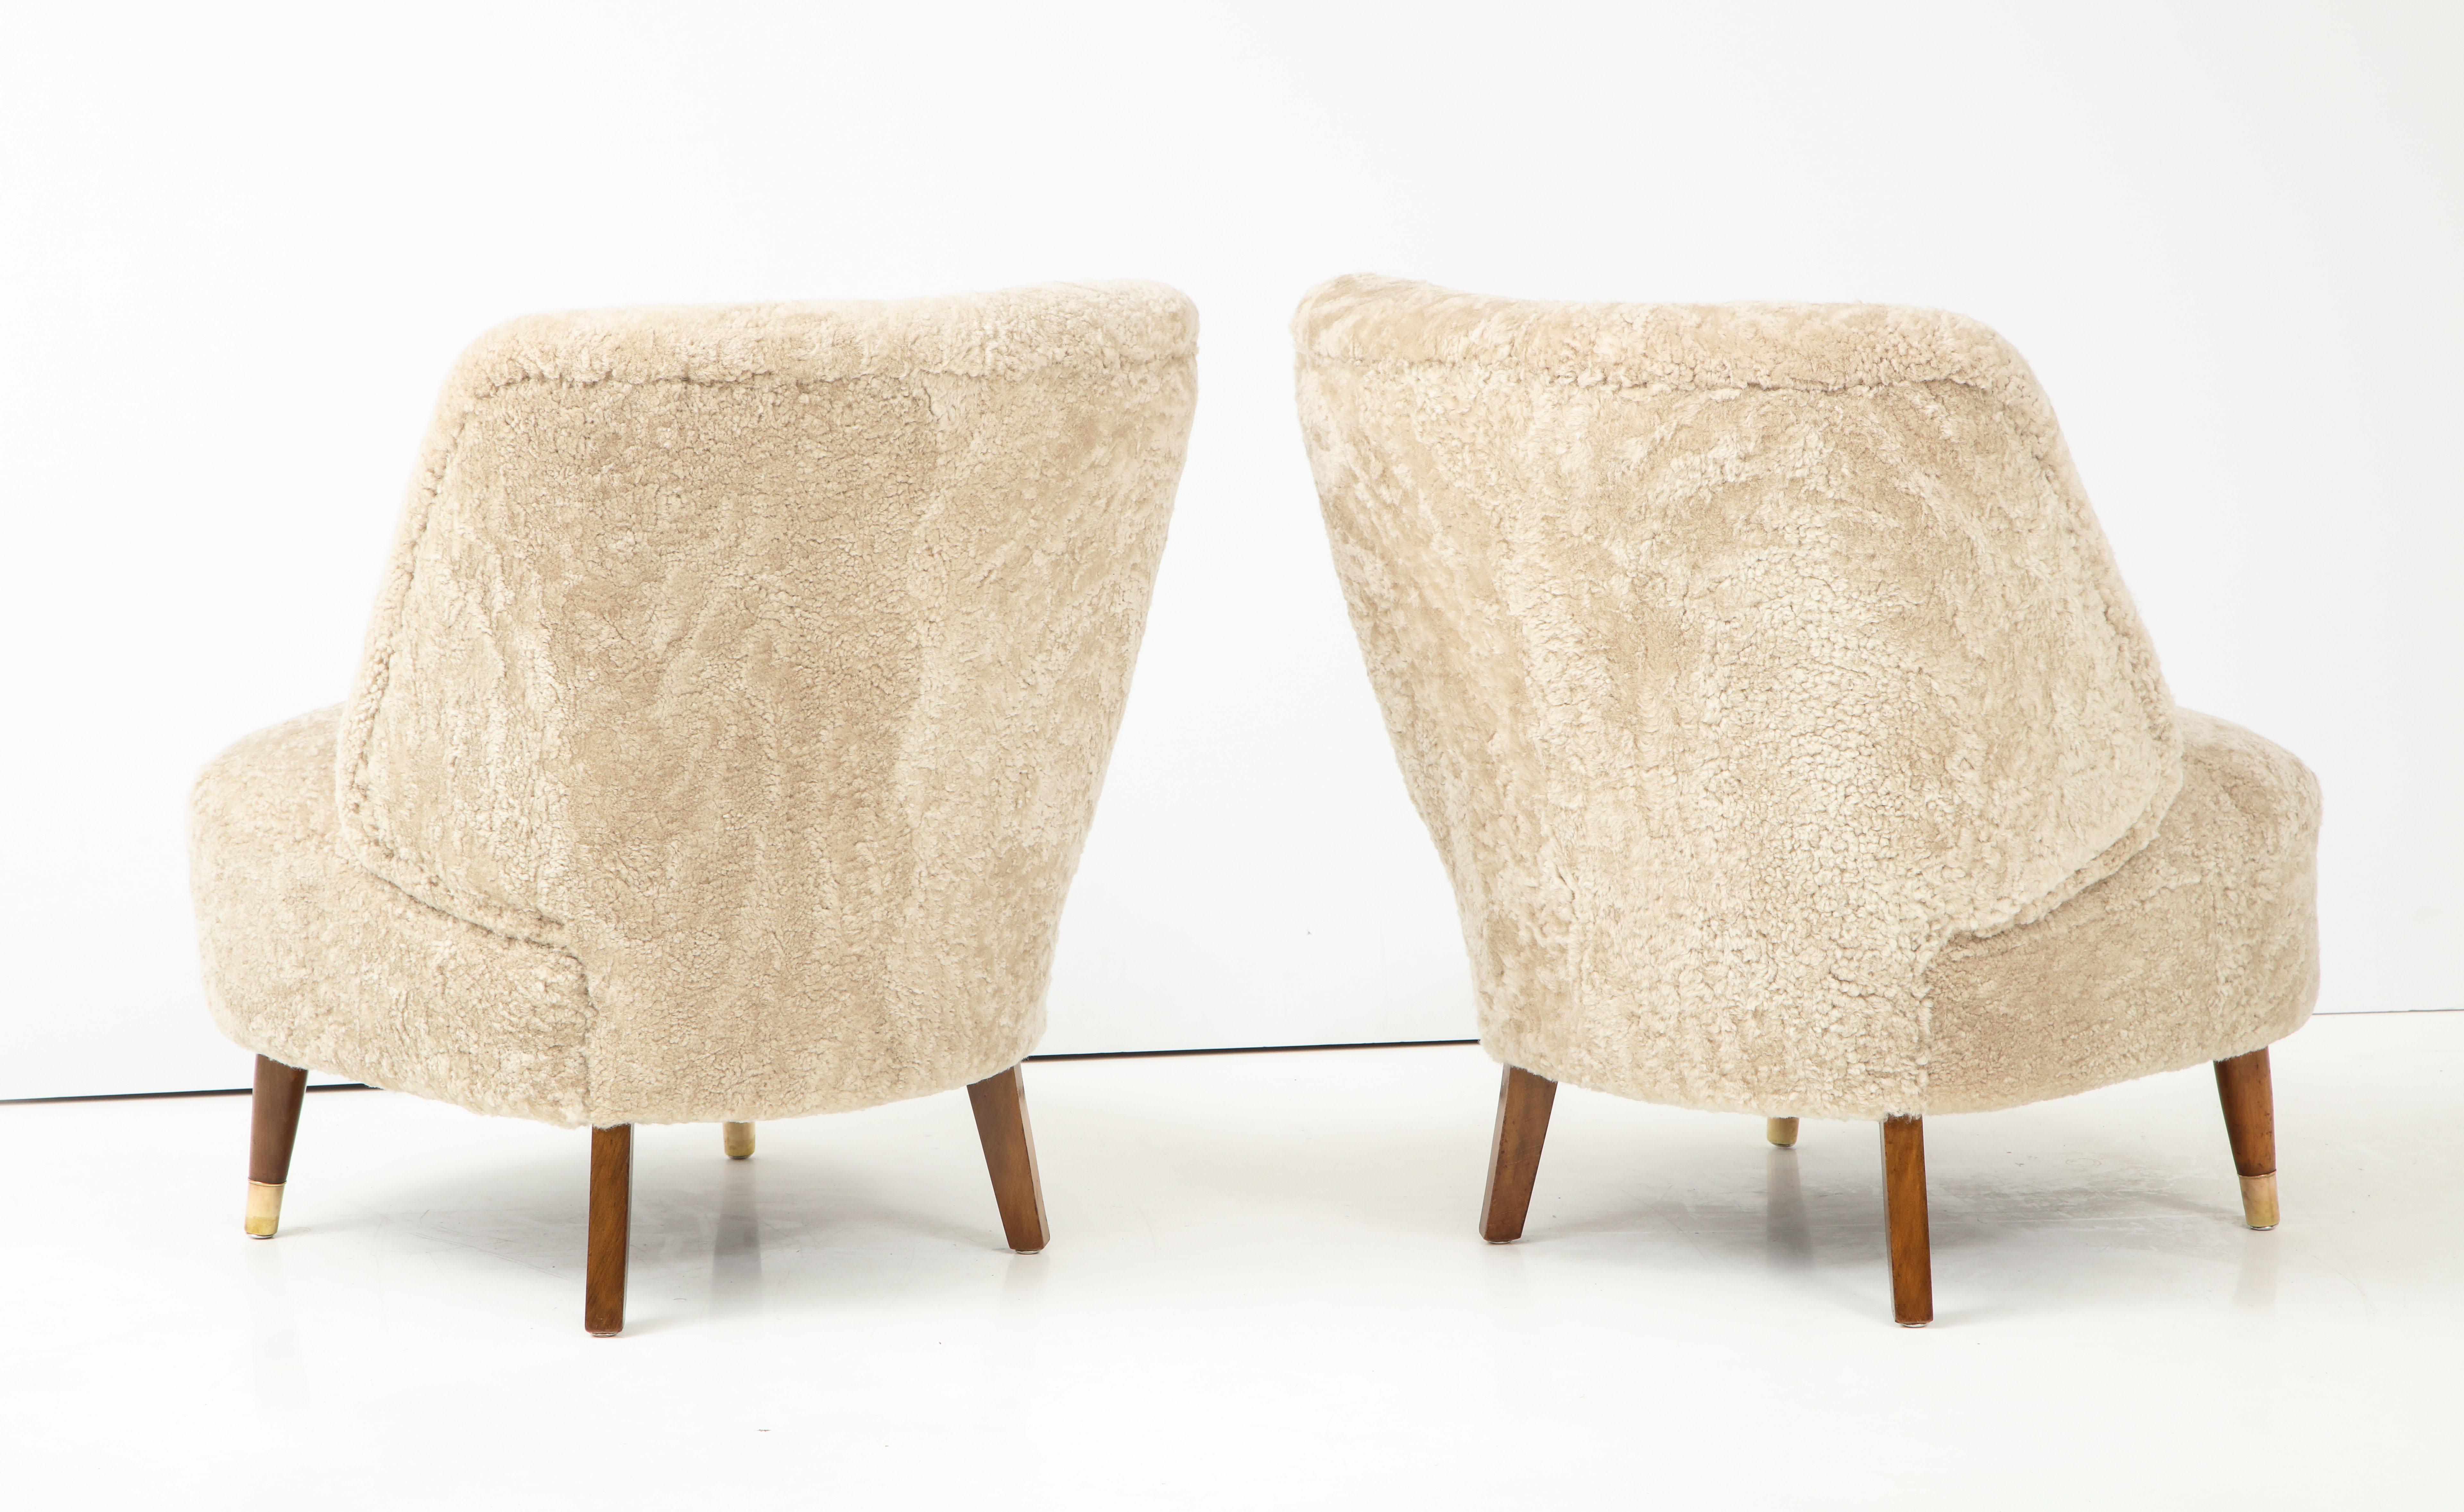 Mid-20th Century Pair of Danish Design Sheepskin Upholstered Chairs, circa 1930s